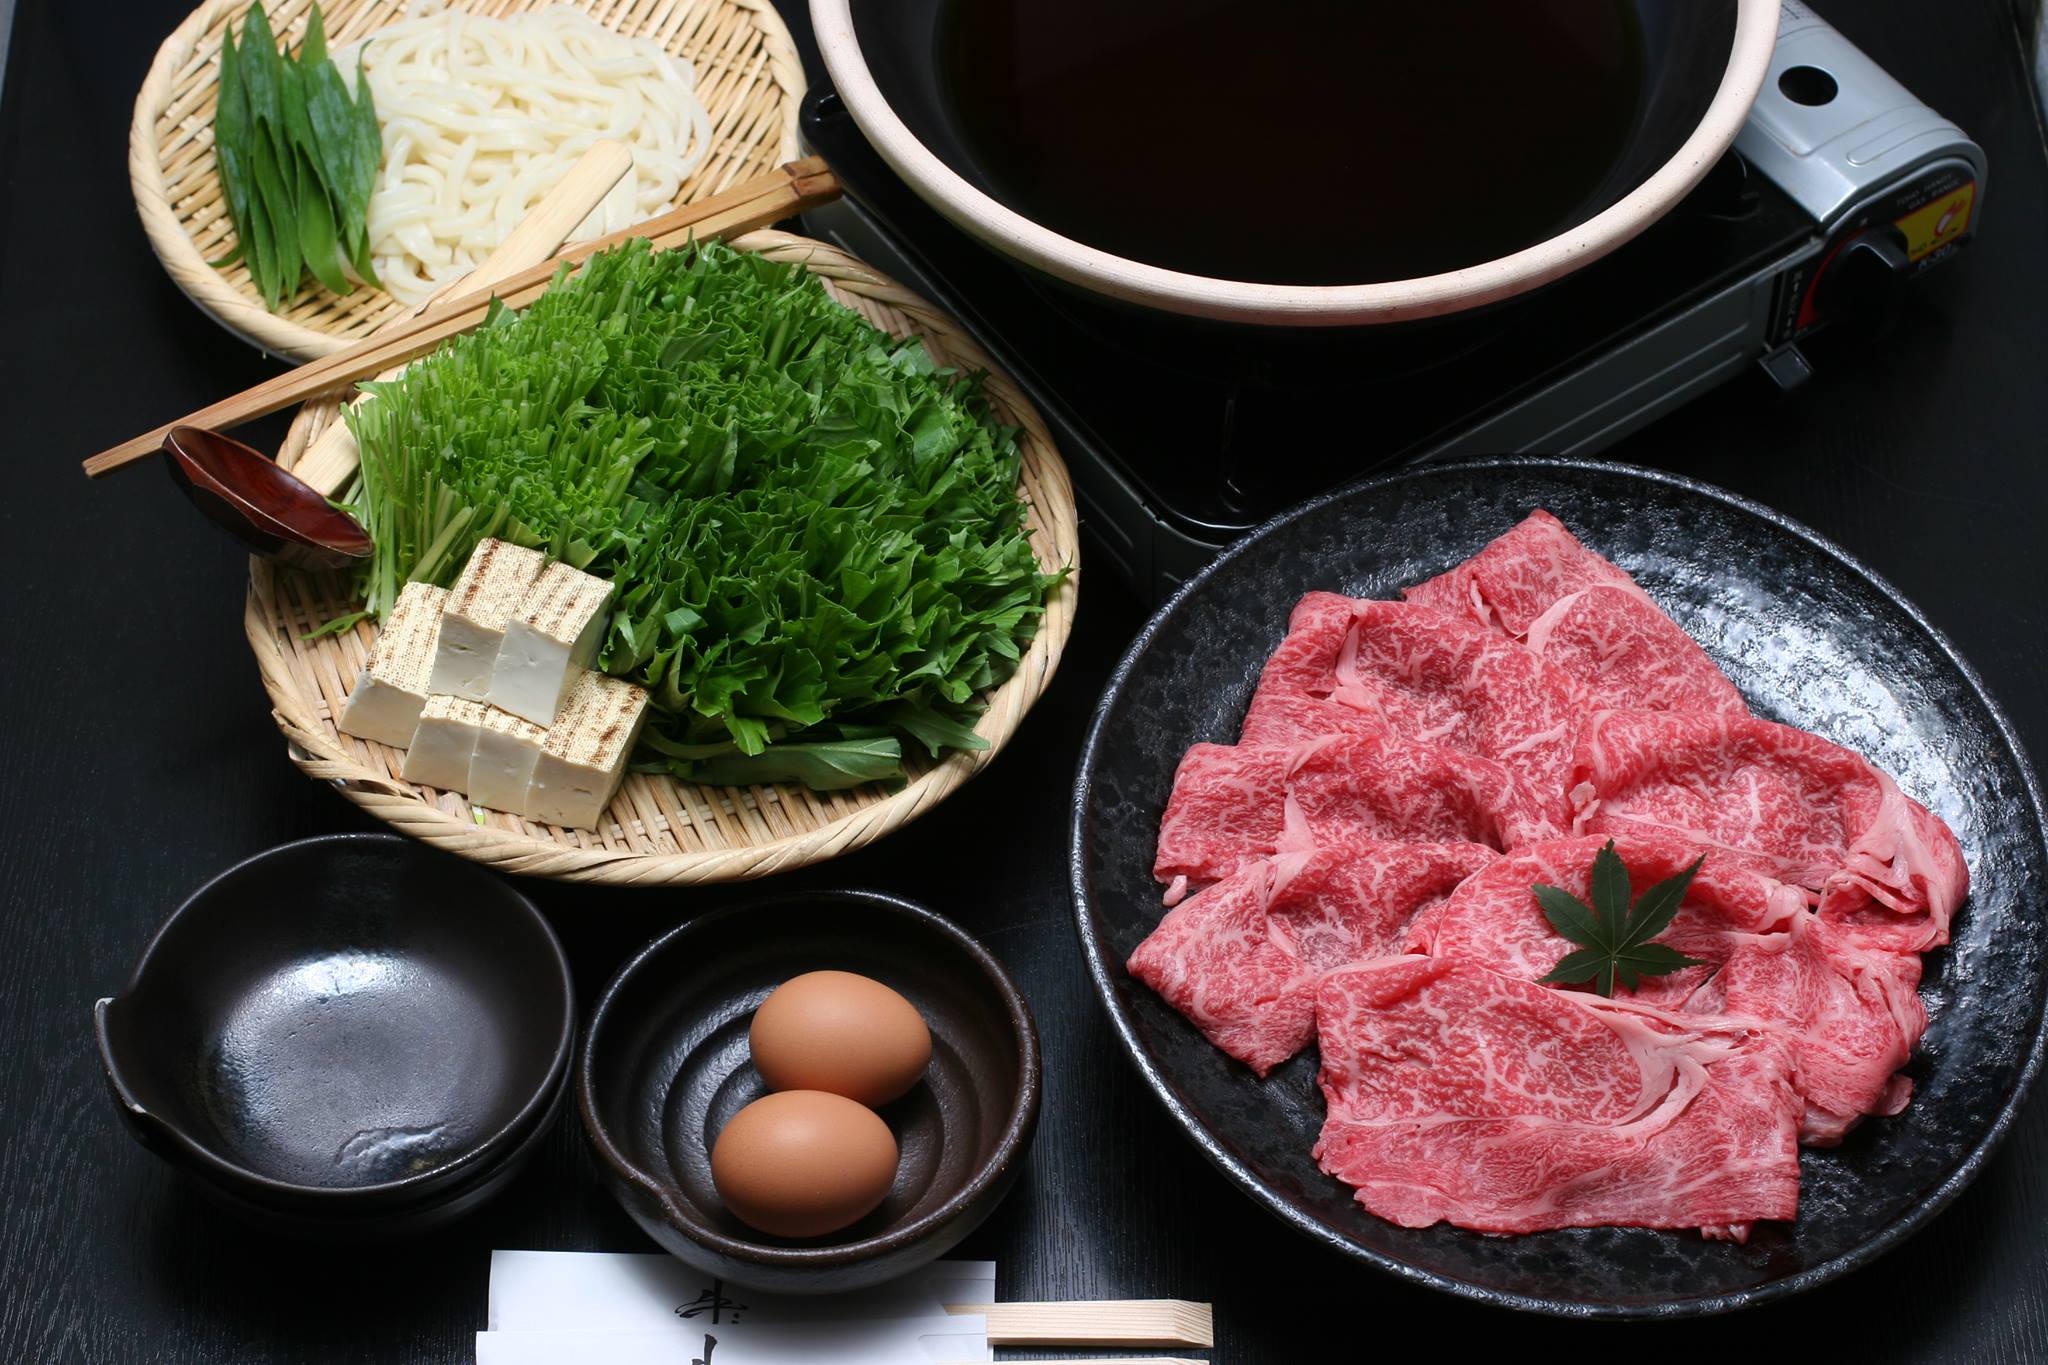 牛・キムラ はりはり鍋 ＠京都「芸能人も通う隠れた名店」の鍋を実食レビュー